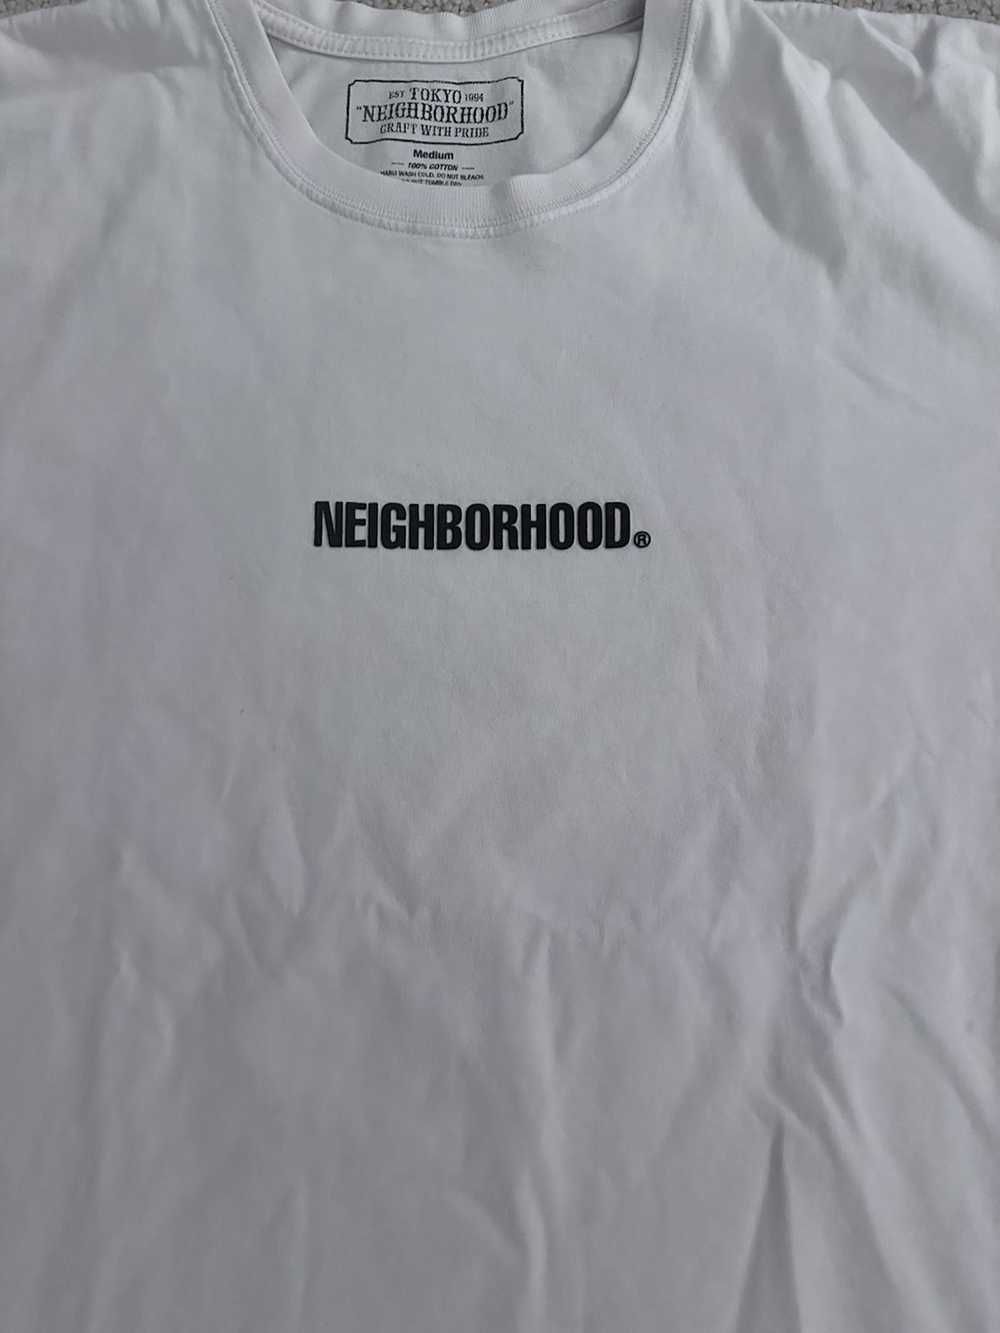 Neighborhood NEIGHBORHOOD WHITE-T - image 2